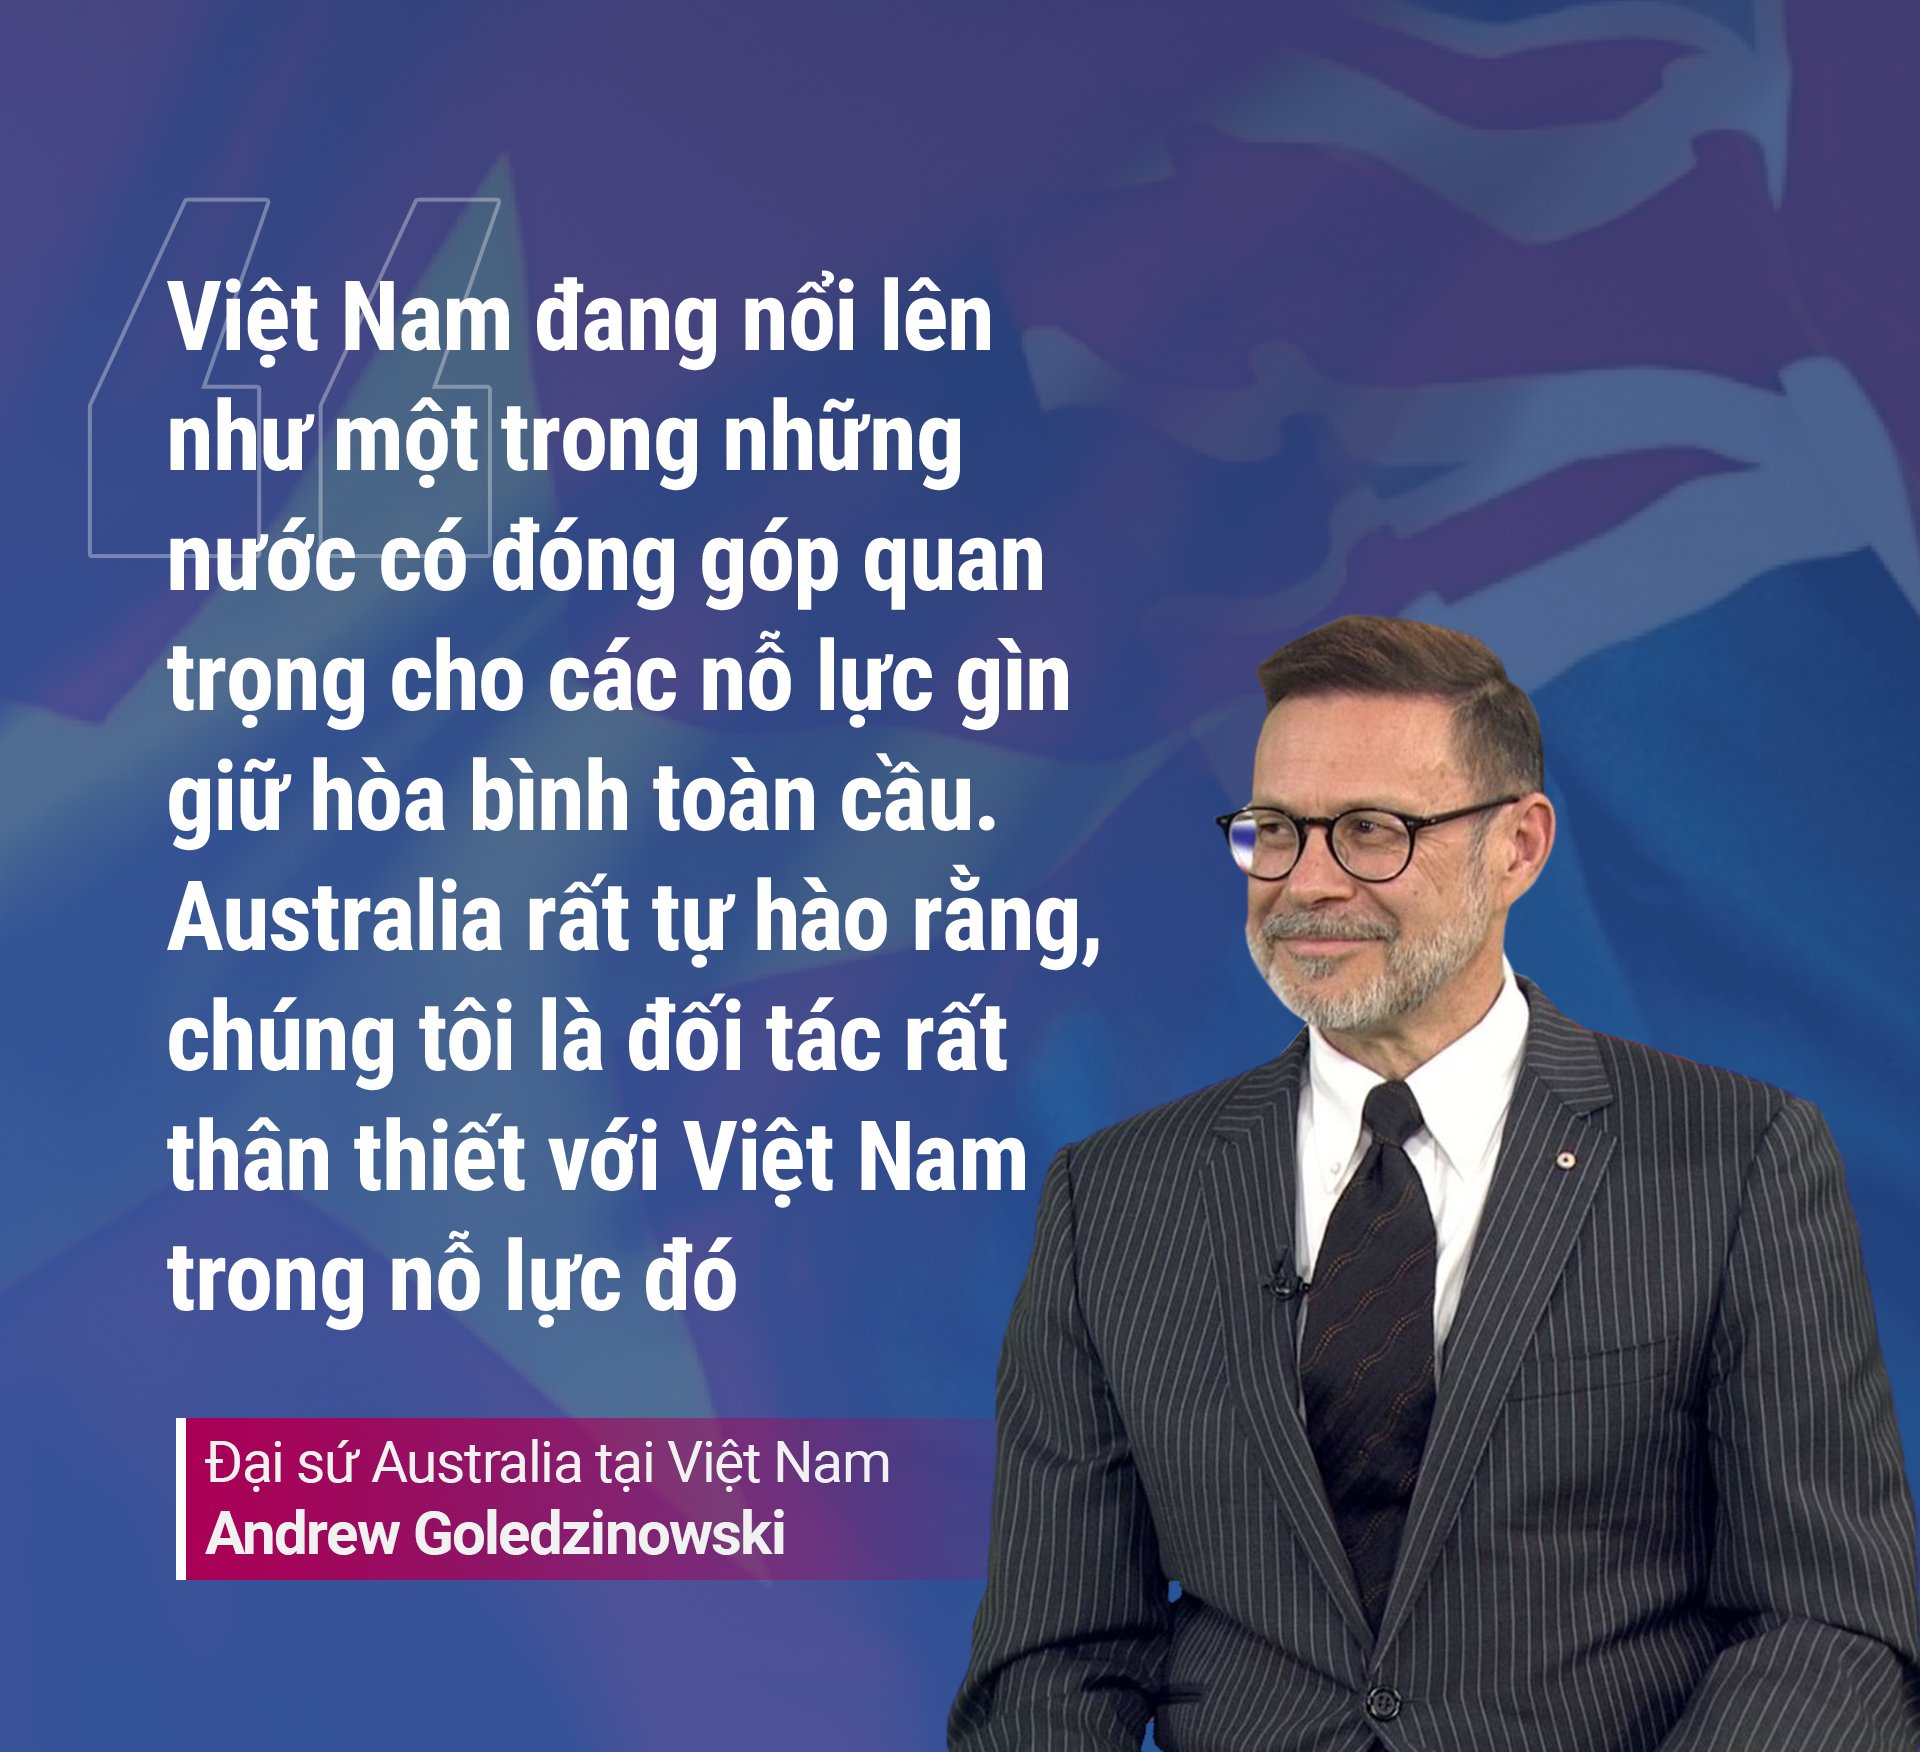 Đại sứ các nước lần đầu chia sẻ thông điệp quan trọng về thế giới năm 2023 và chuyện &quot;đi sứ nước Việt&quot; - Ảnh 4.